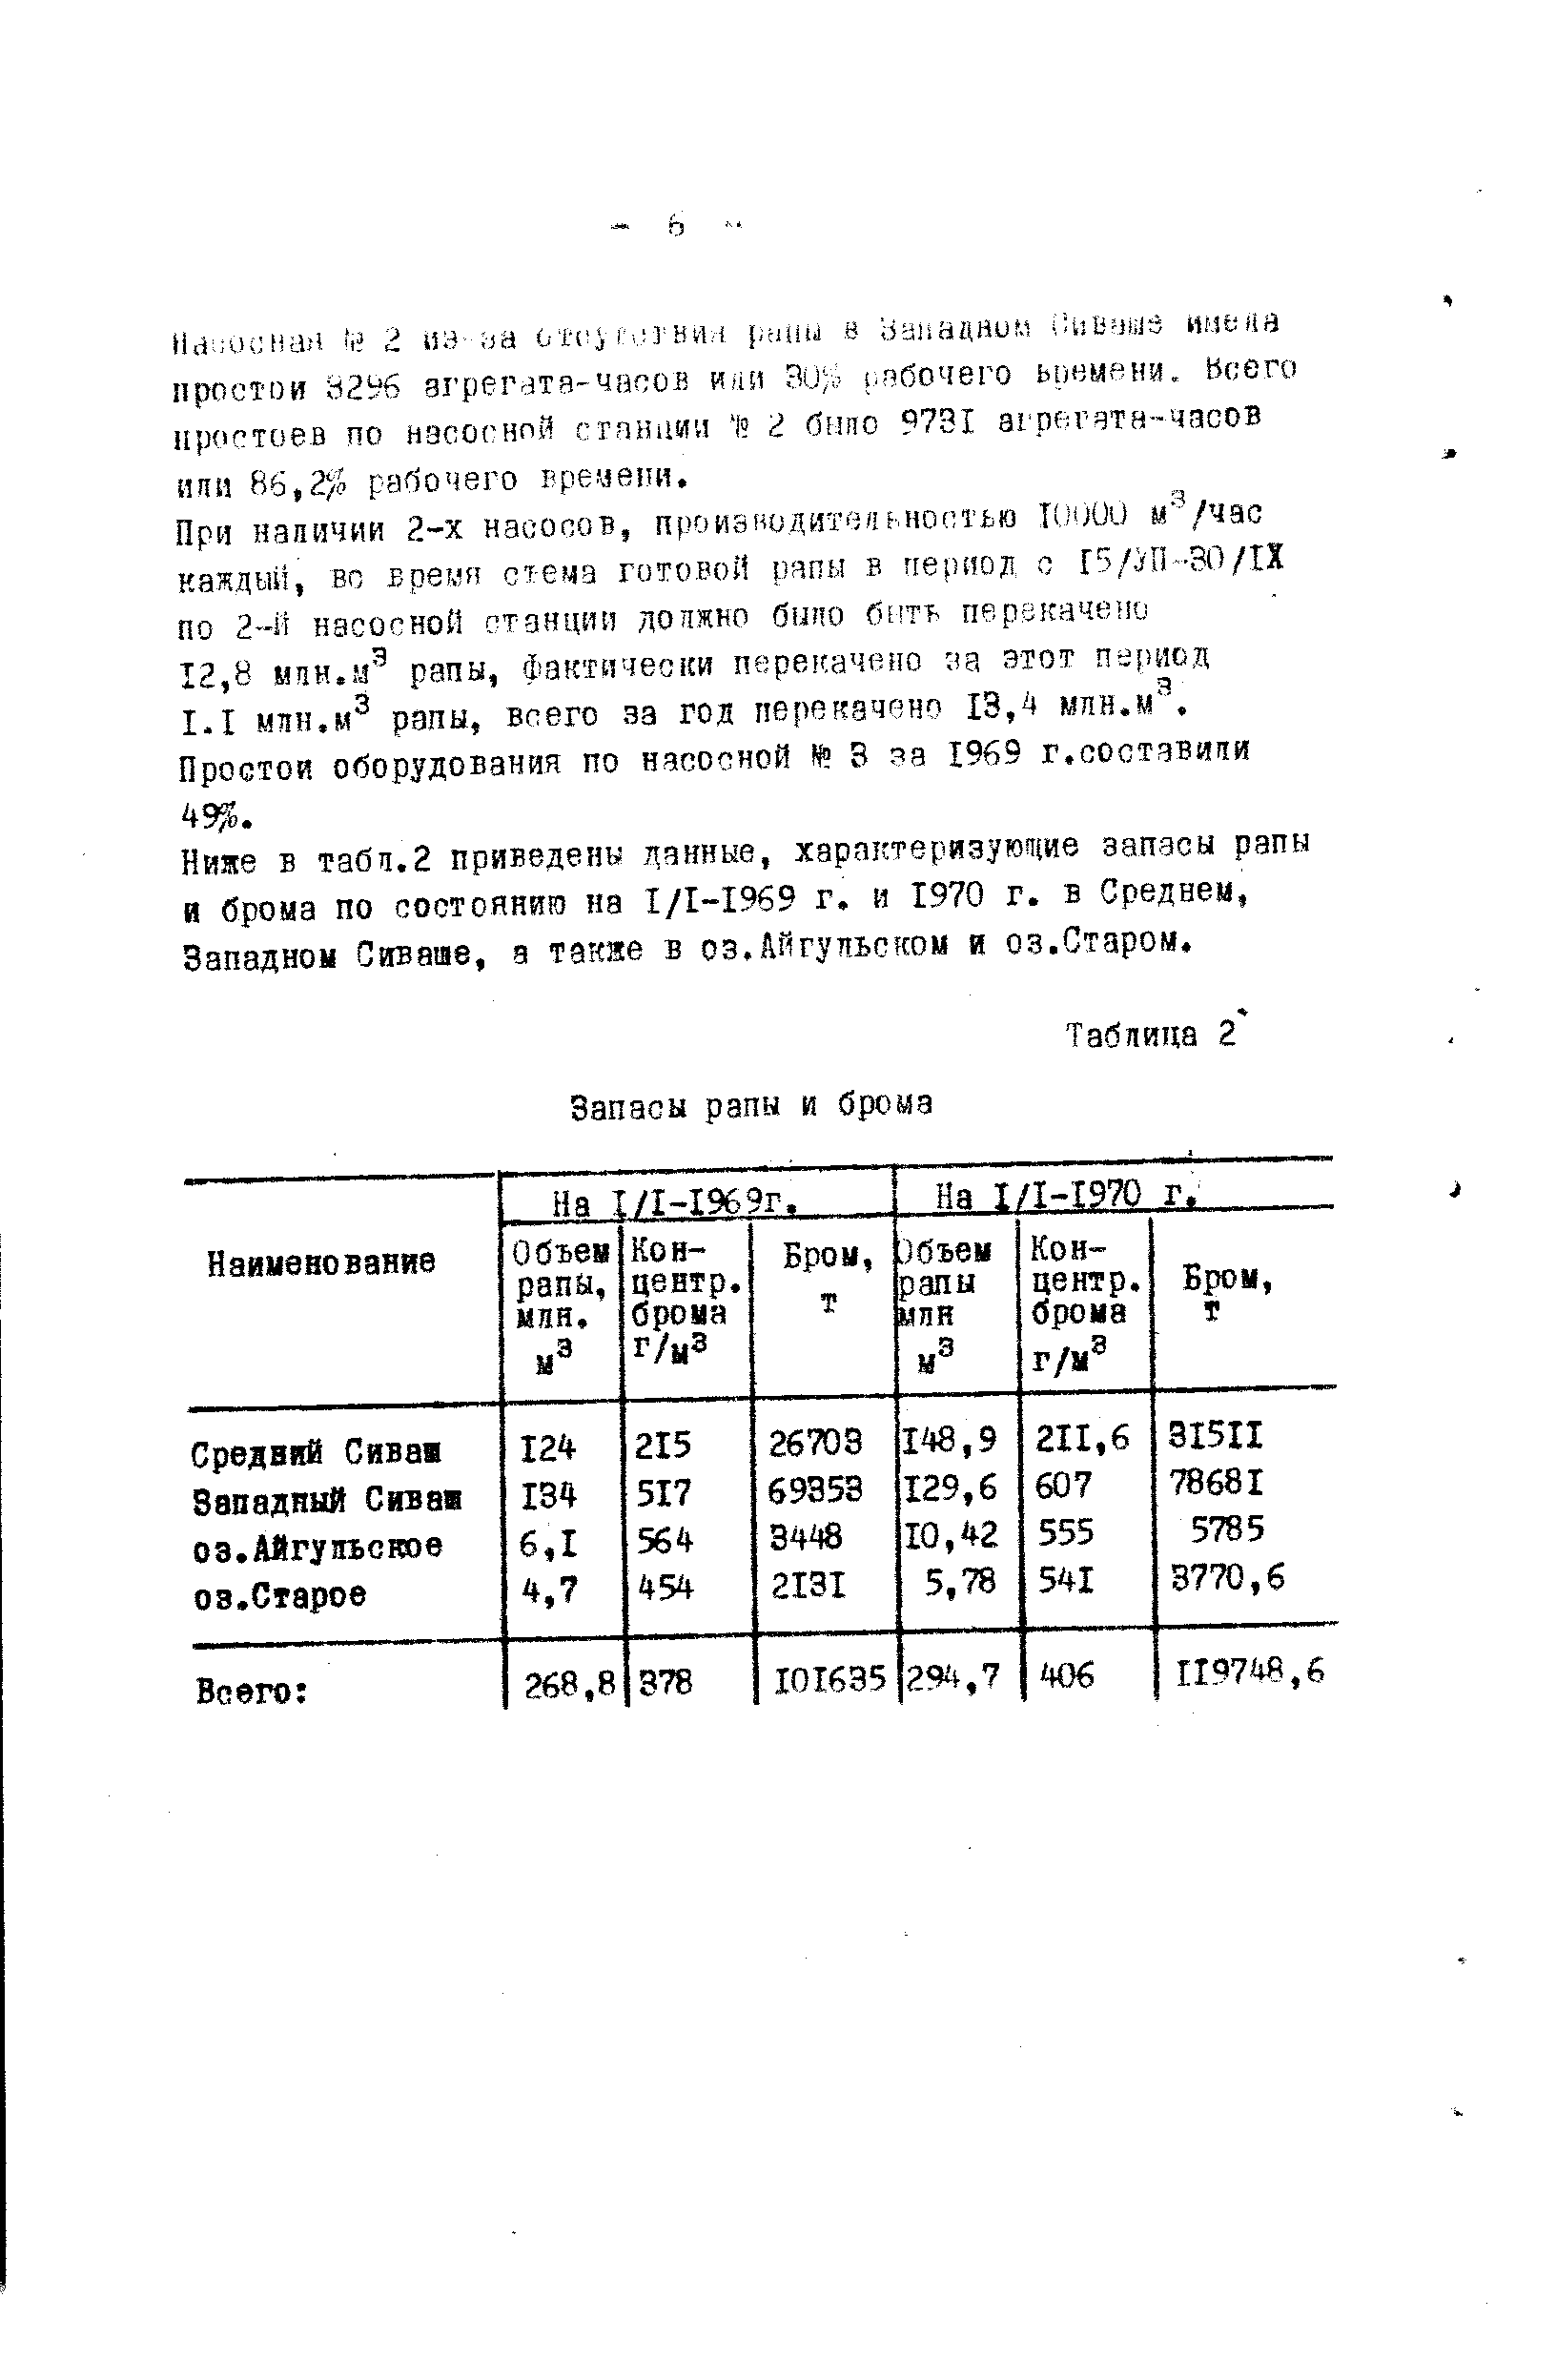 Ниже в табя.2 приведена ланные, характеризующие запасы рапы и брома по состоянию на 1/1-1969 г. и 1970 г. в Средней, Западной Сиваше, а такие в оз.Айгупьсгом и оз.Старом.